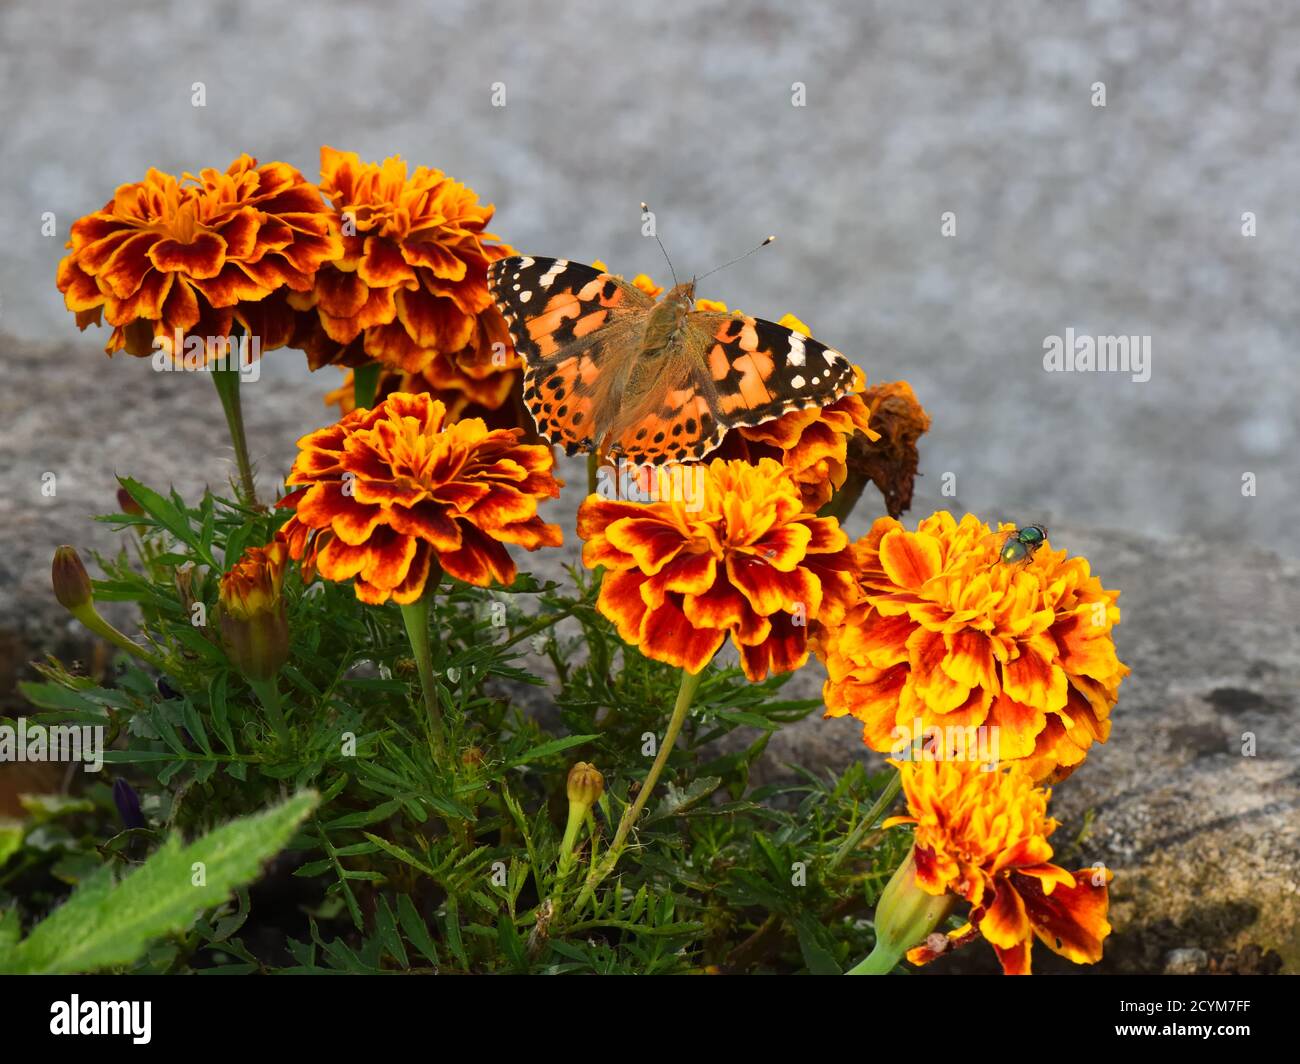 Ein Schmetterling der gemalten Dame (Vanessa cardui), der in einem schottischen Garten Nektar von französischen Marigolds (Tagetes patula) sucht. Stockfoto